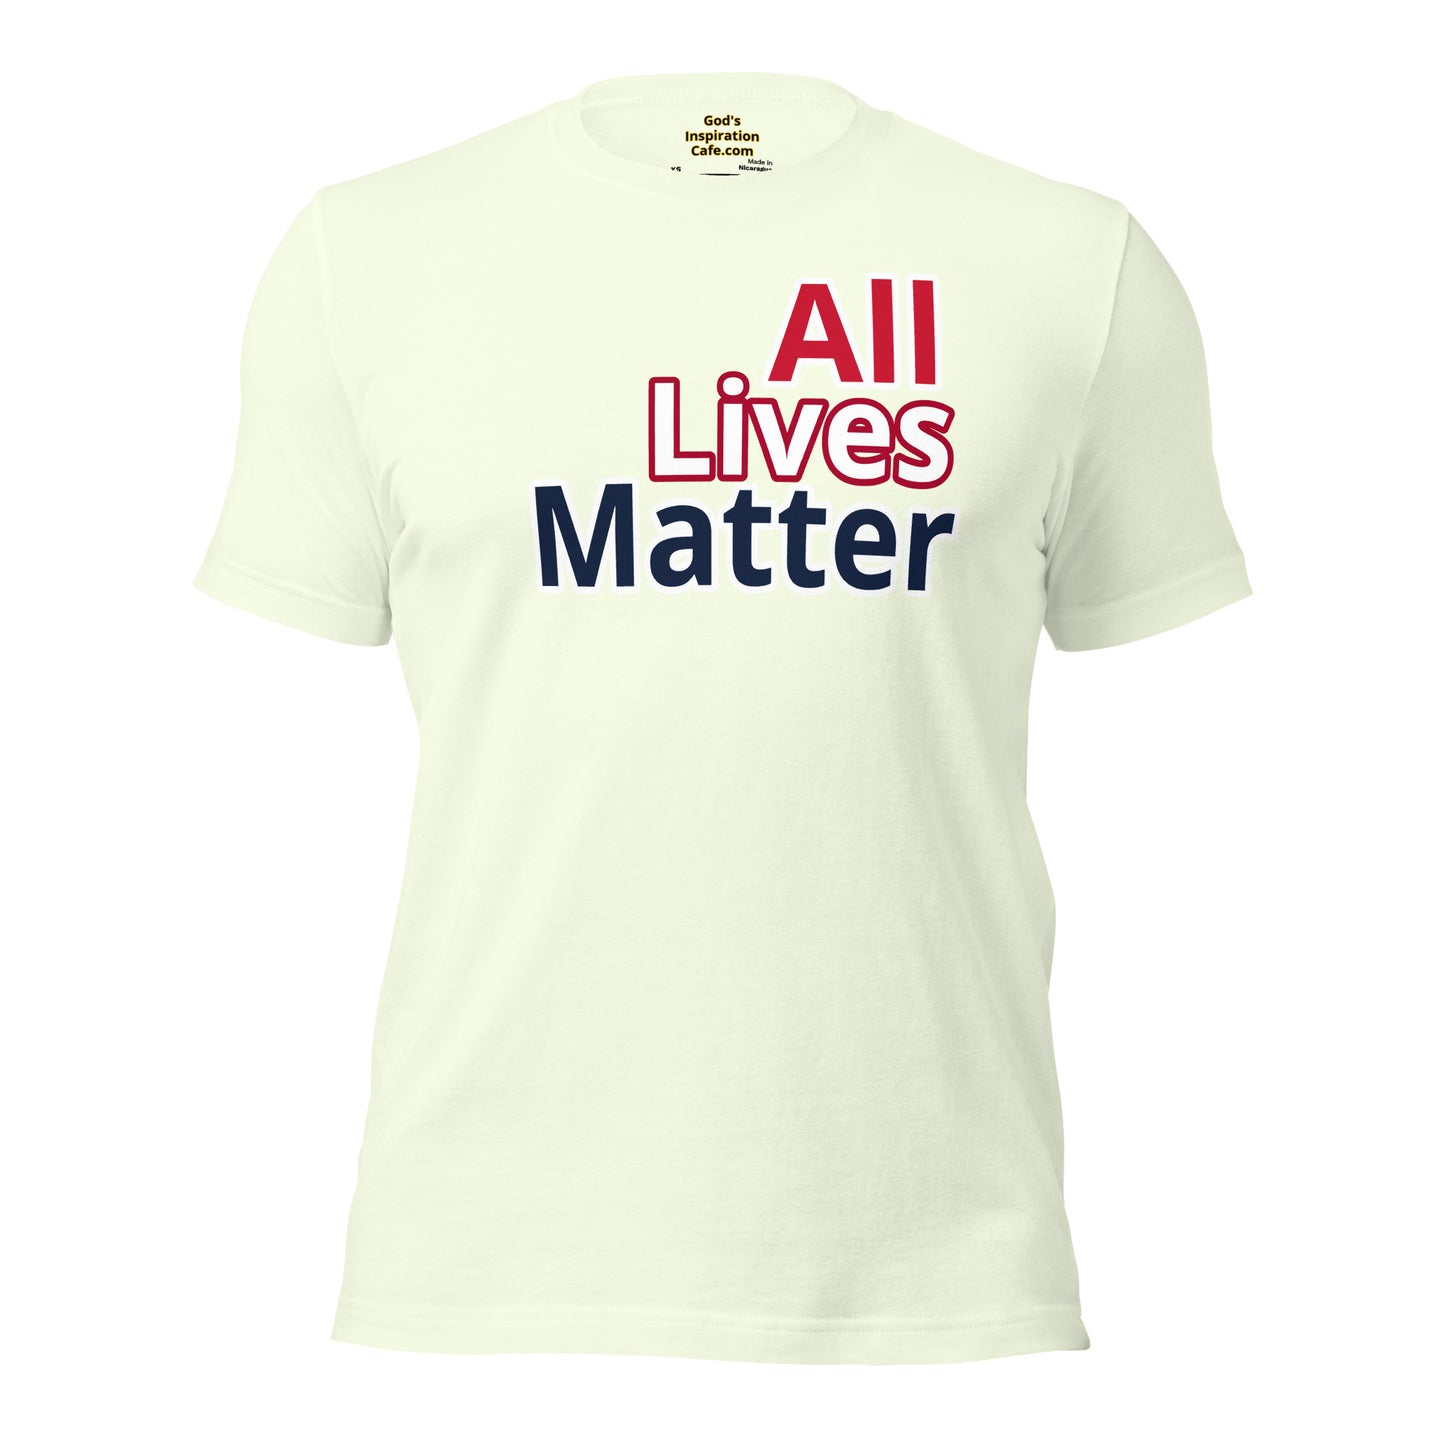 All Lives Matter Shirt